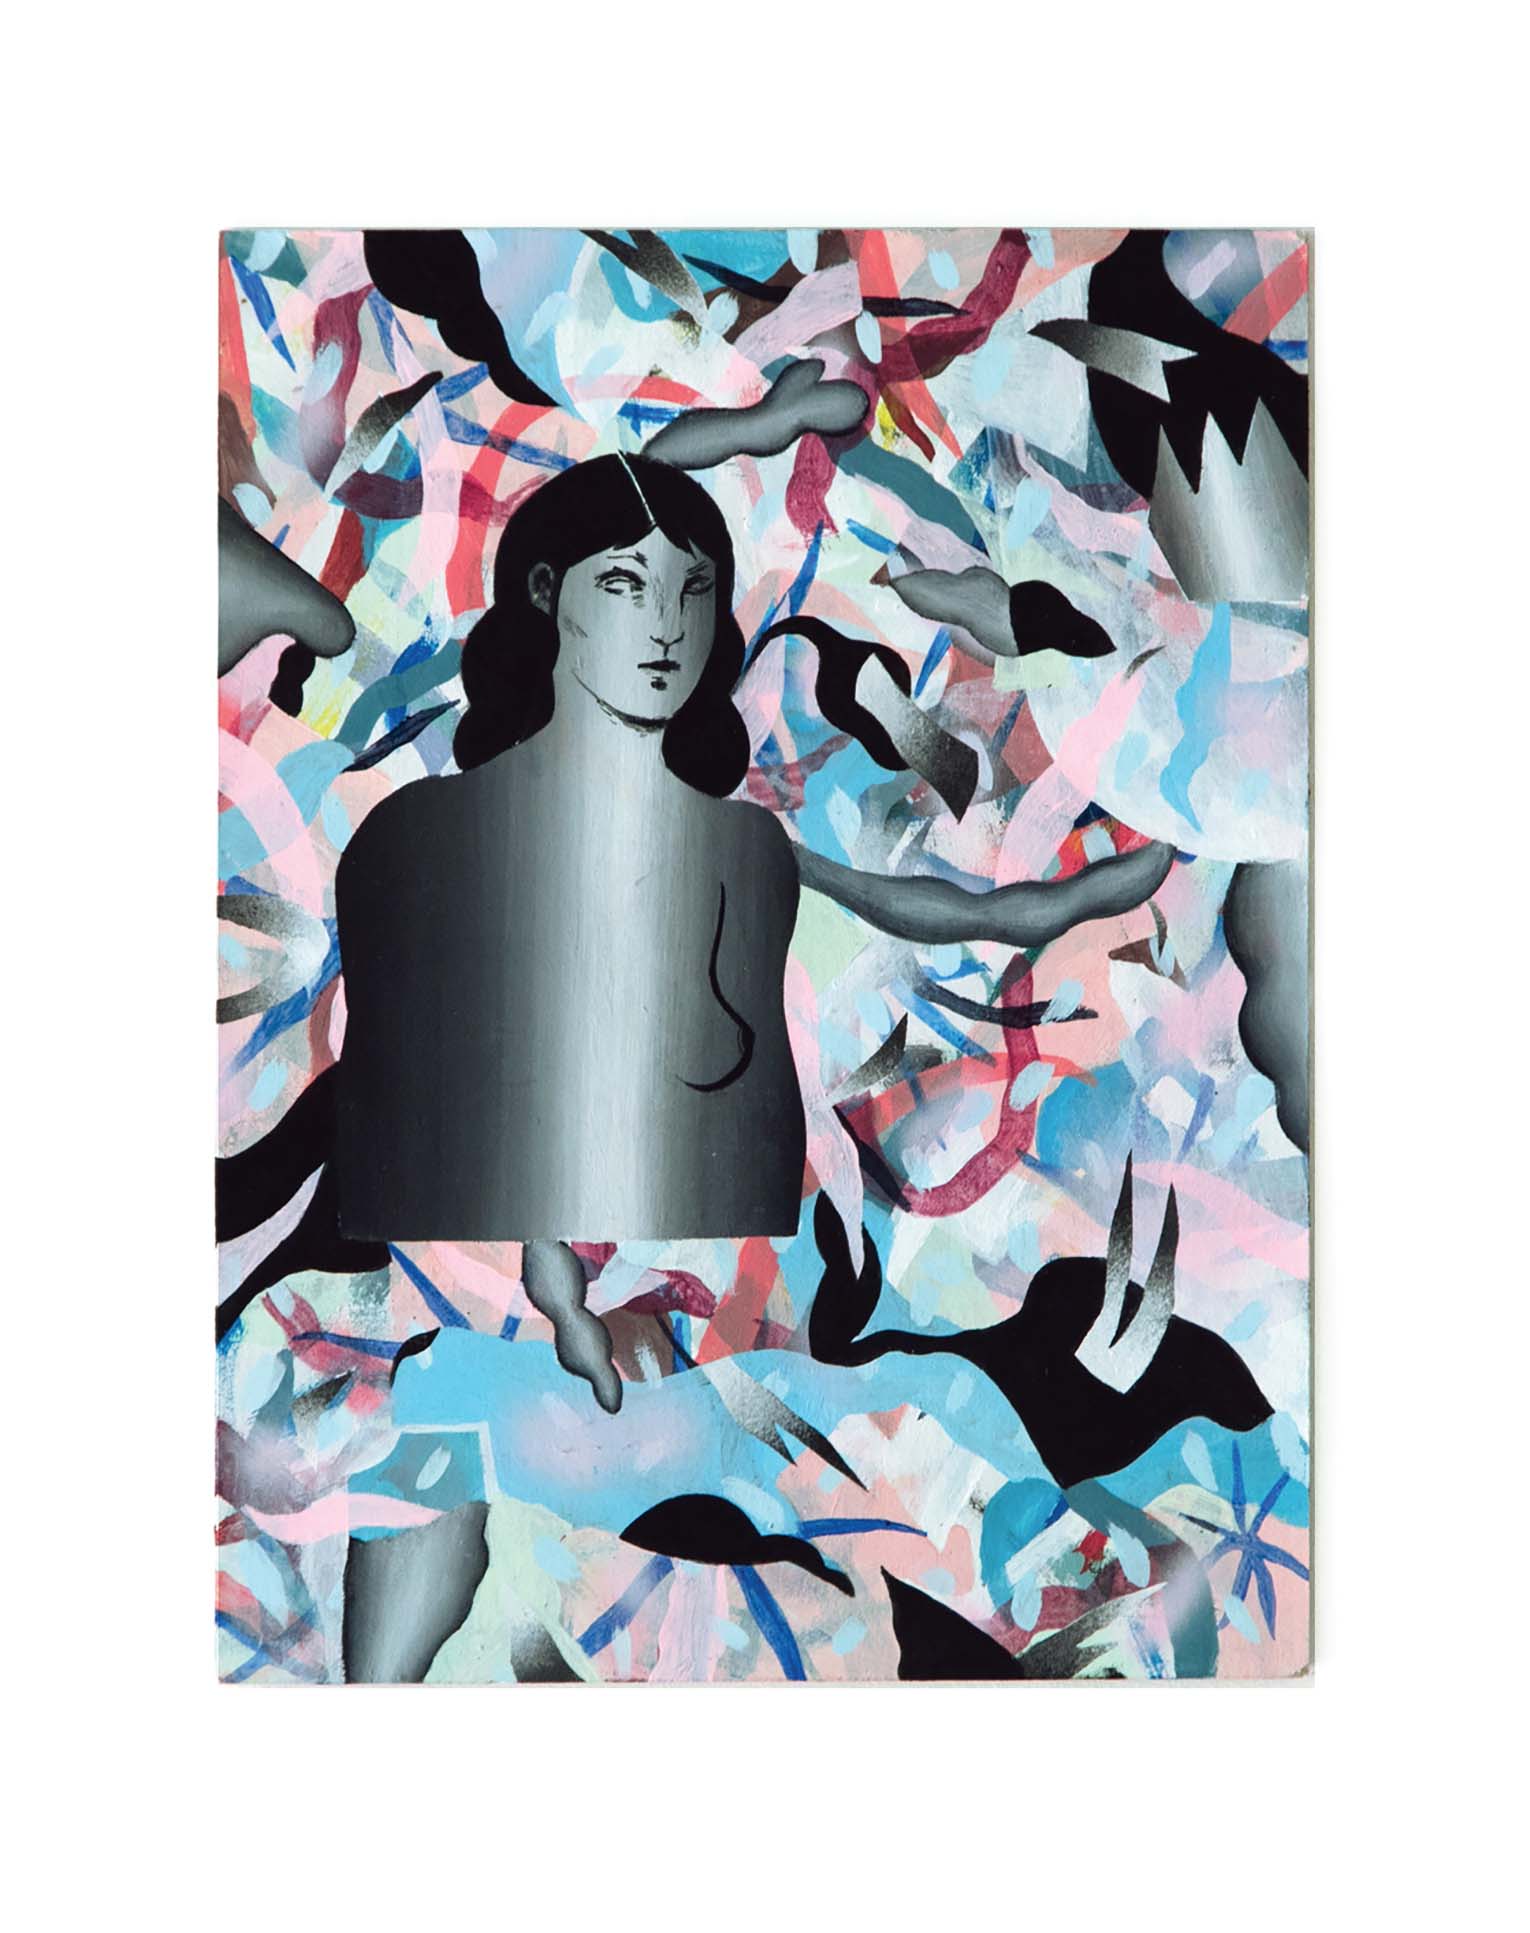 Laura - Peinture acrylique sur bois - 30,5 x 23,5 cm - 2018